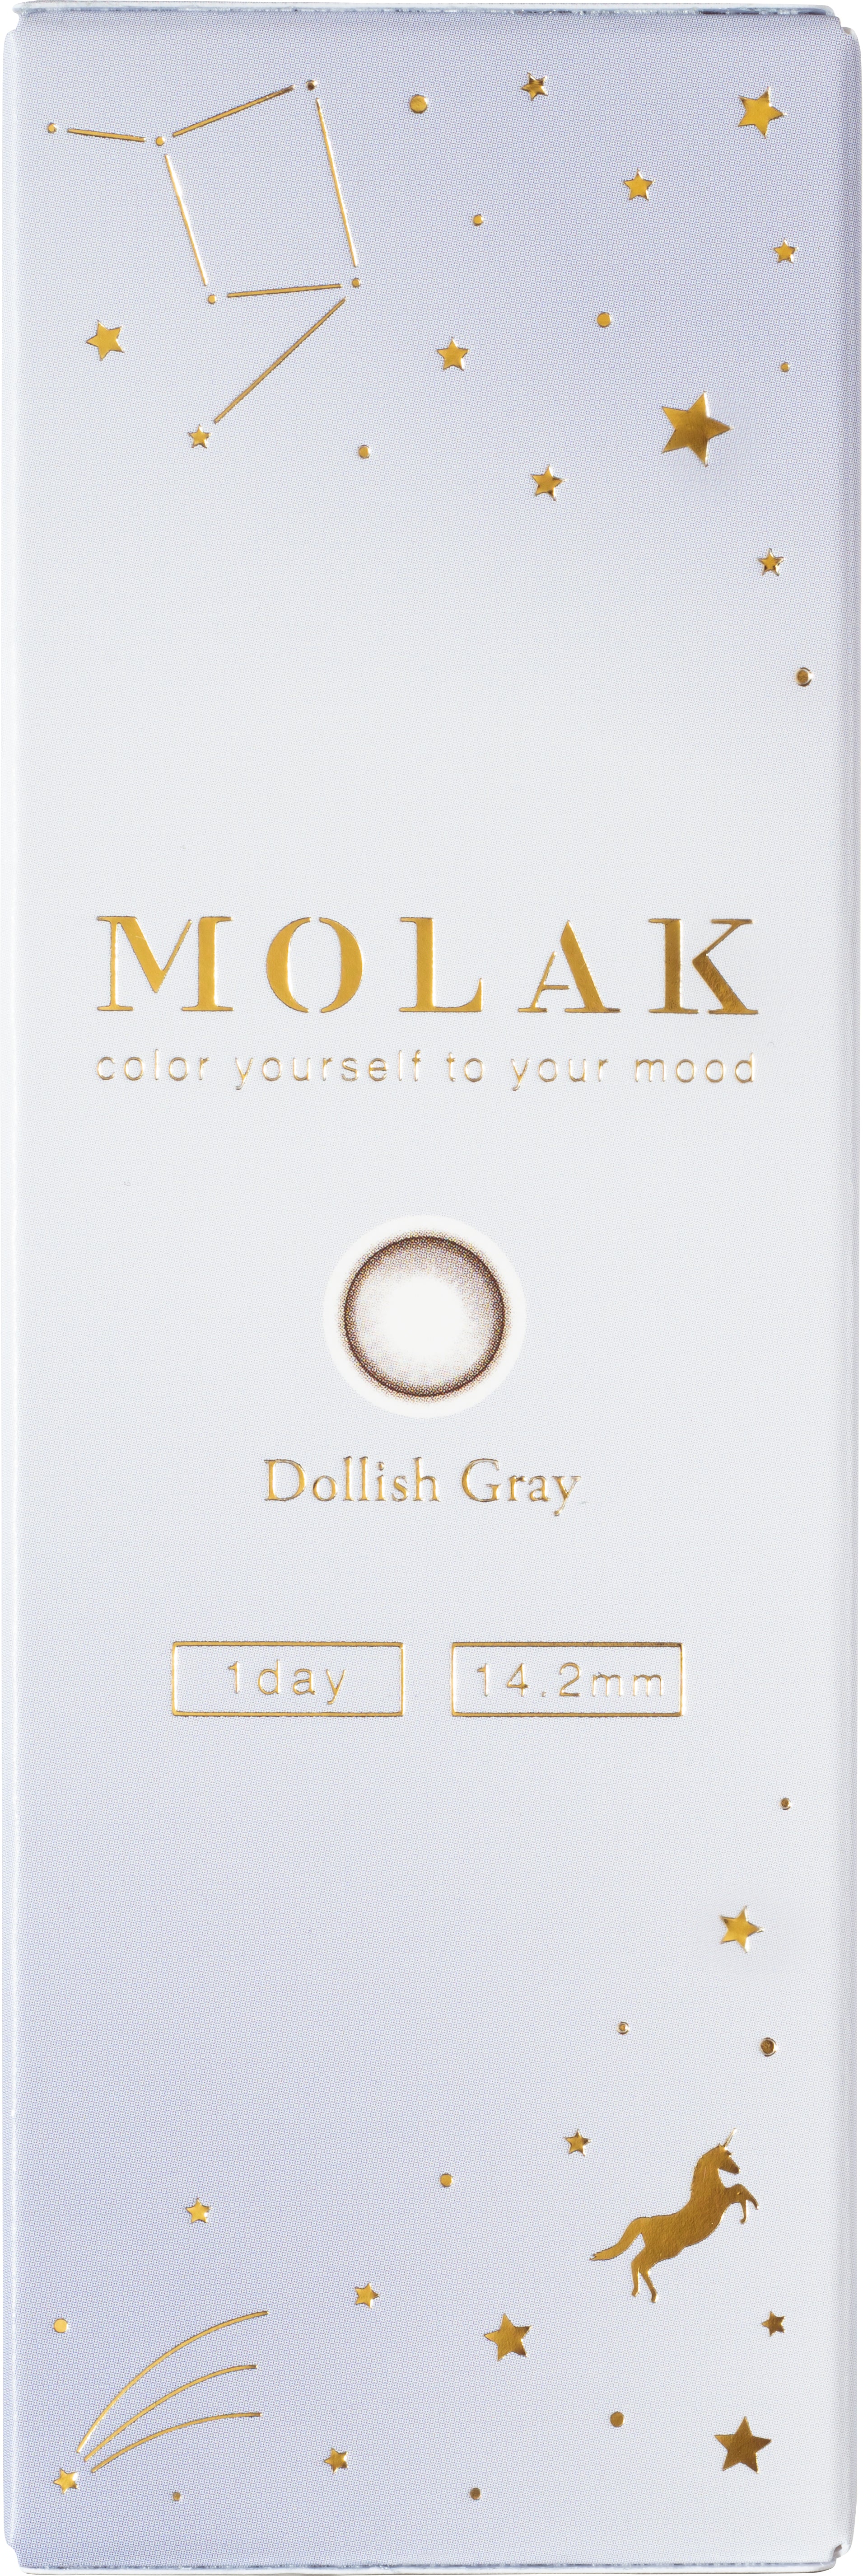 Dollish Gray | 1day